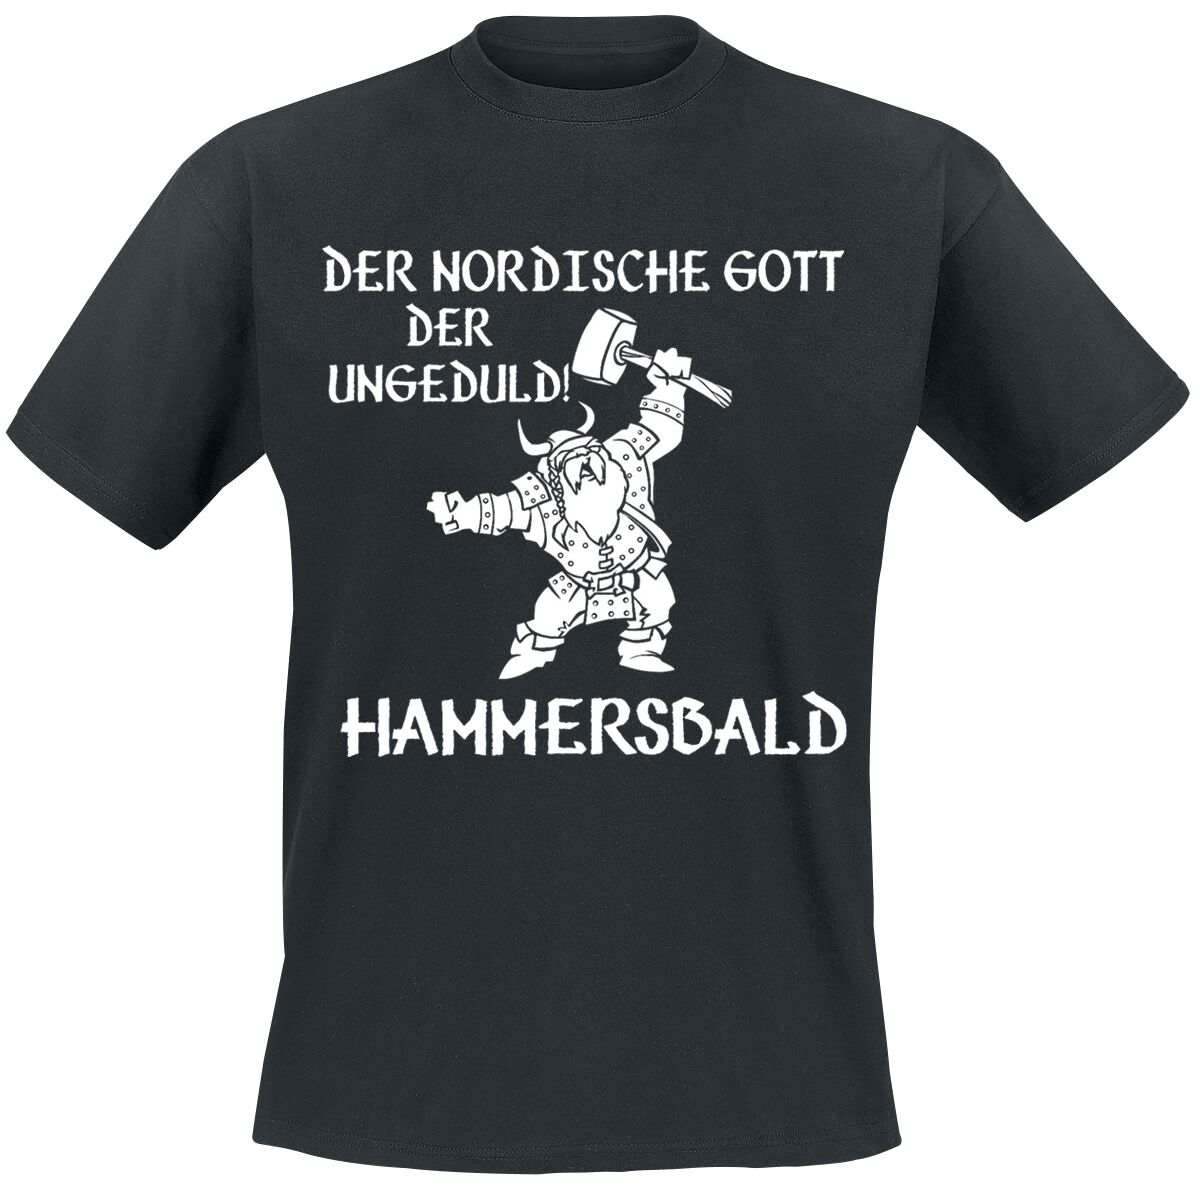 Sprüche T-Shirt - Der nordische Gott der Ungeduld! Hammersbald - L bis 4XL - für Männer - Größe 4XL - schwarz